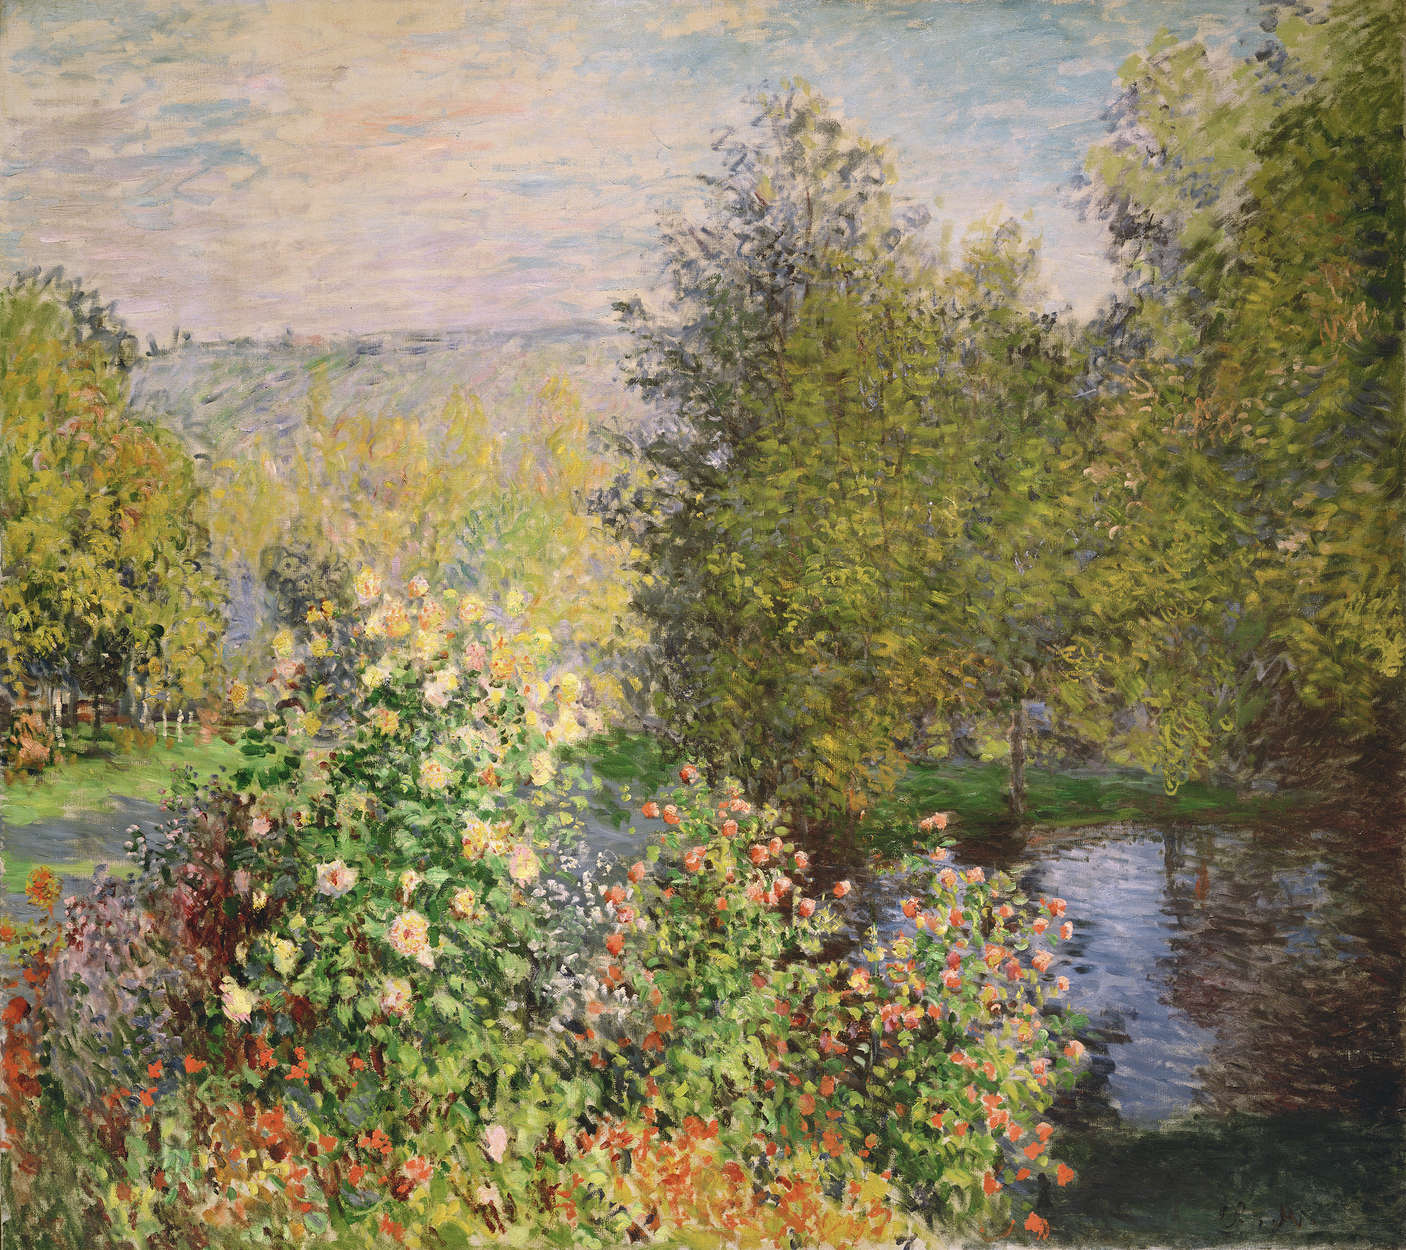             Fototapete "Eine Ecke des Gartens in Montgeron" von Claude Monet
        